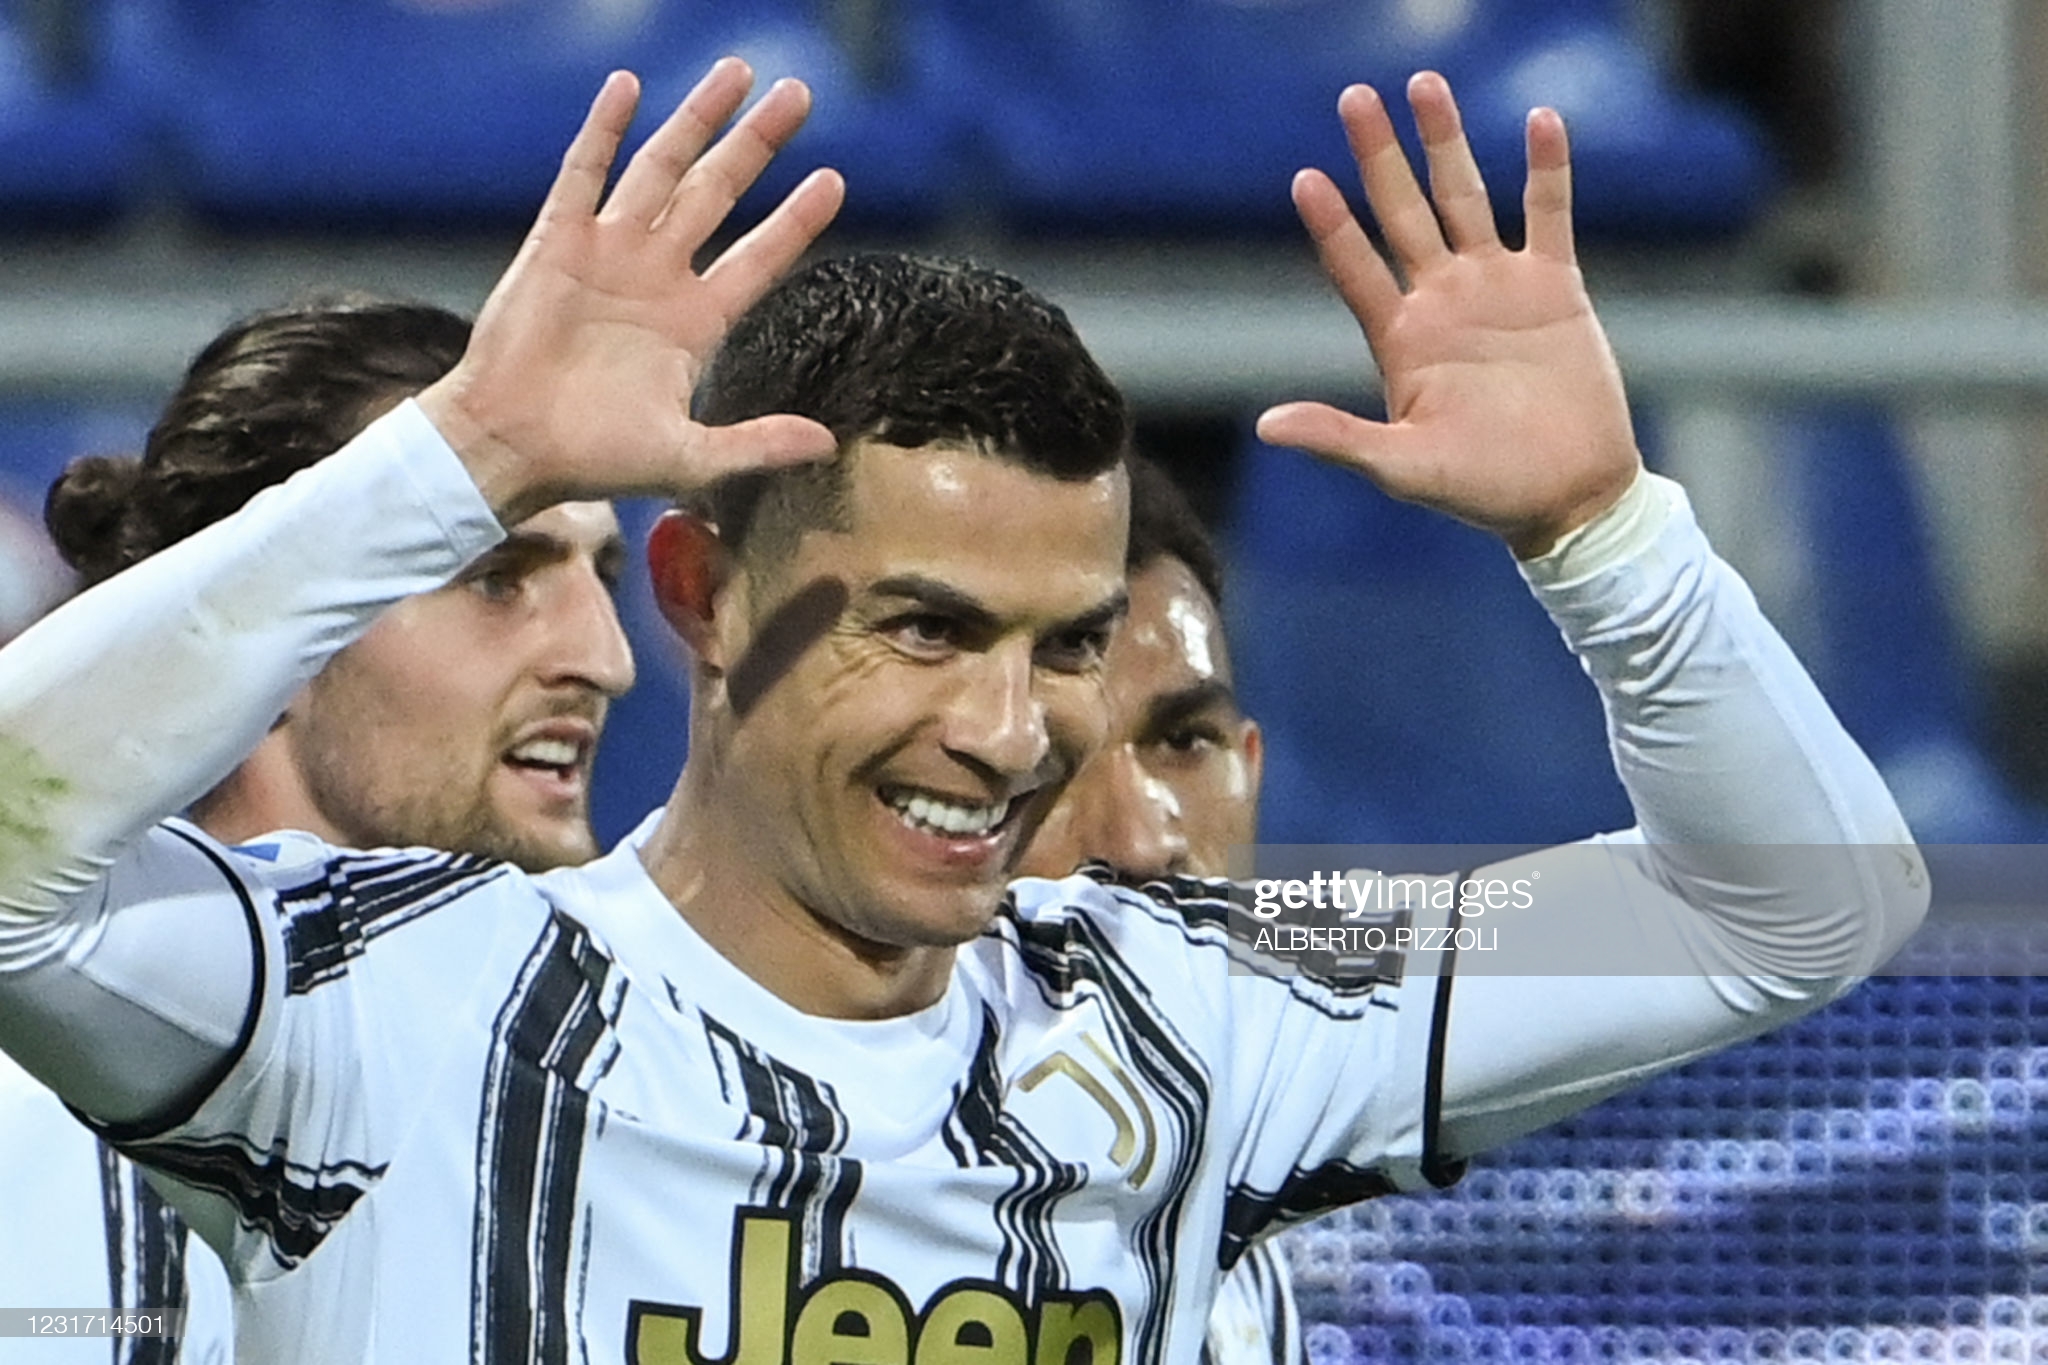 « Ils devraient tous le remercier « , Après ses critiques, Capello encense Cristiano Ronaldo